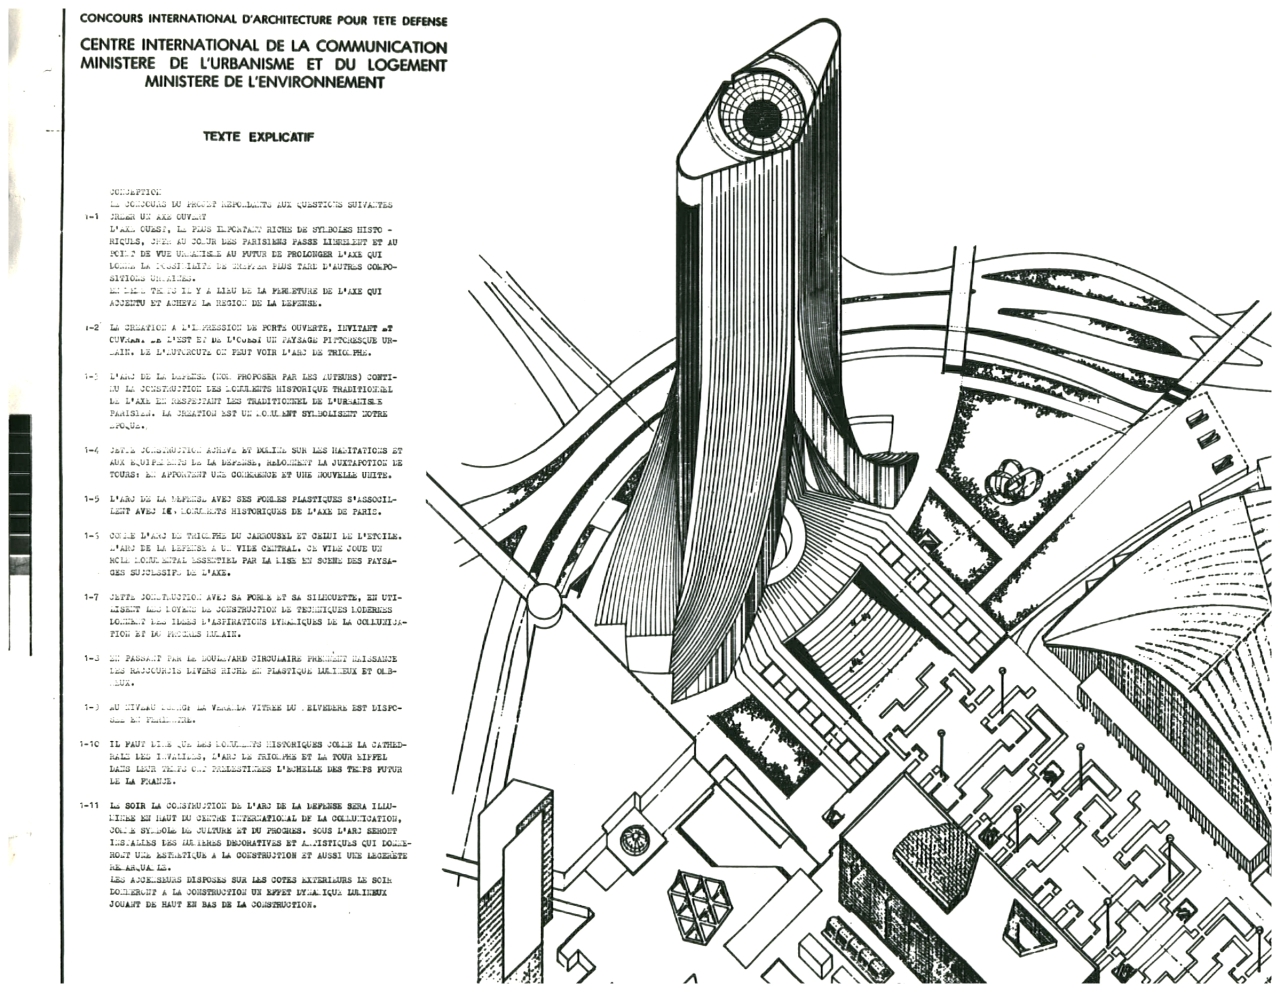 Փարիզի Տետ- դե- Ֆանս միջազգային տեղեկատվական կենտրոնի մրցութային նախագիծ, 1983թ.